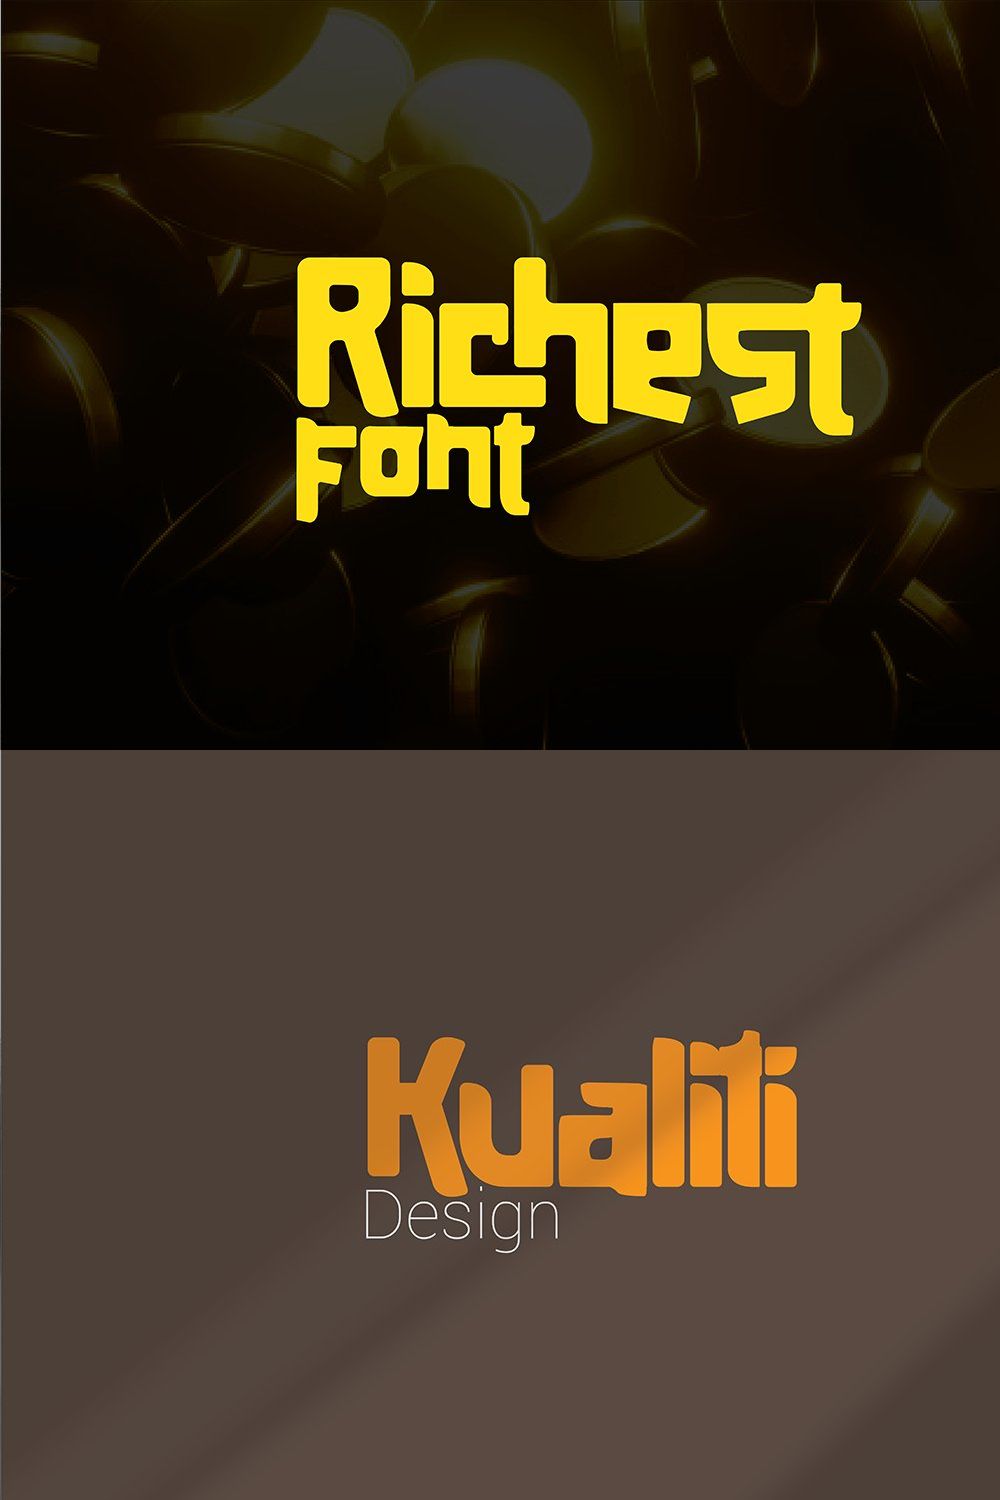 Richest Font pinterest preview image.